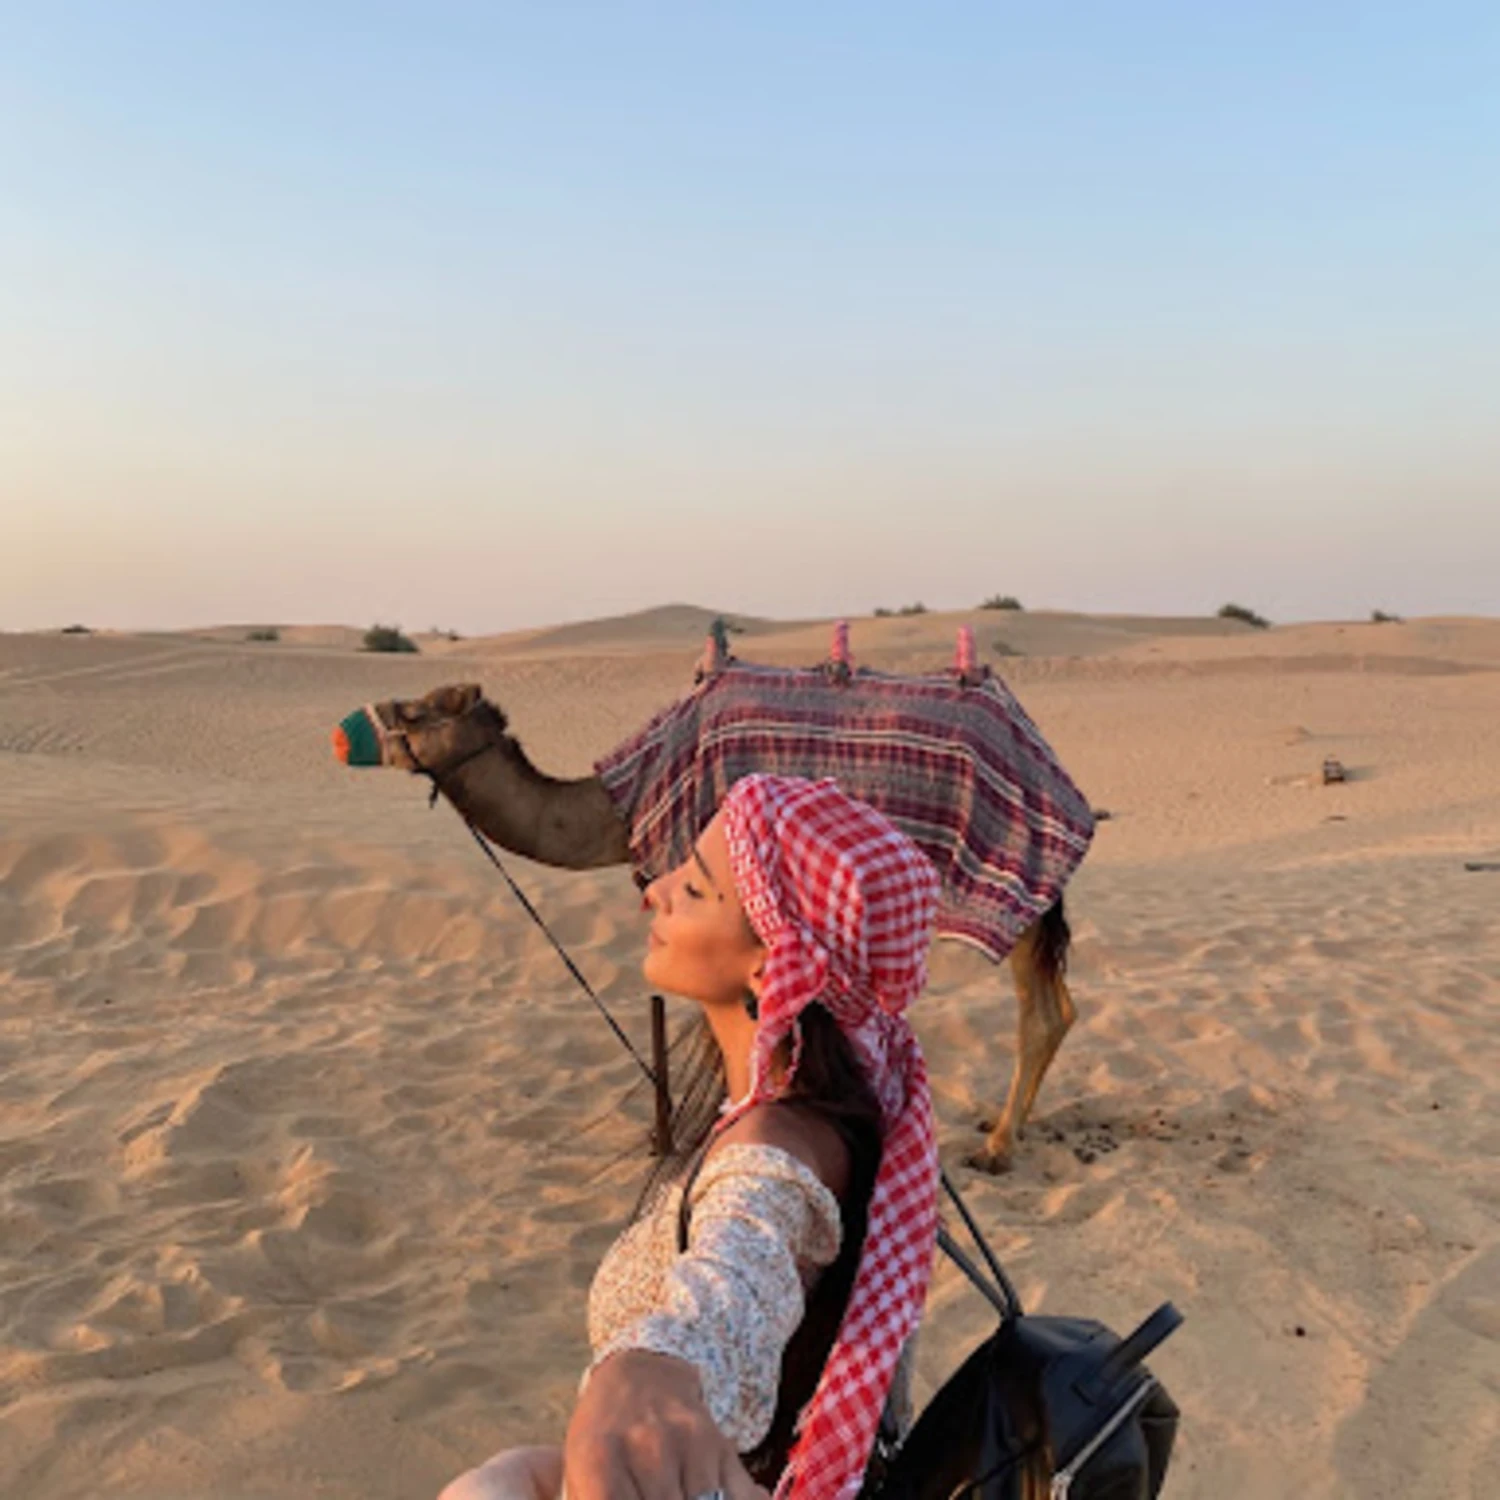 Girl next to camel in desert. 